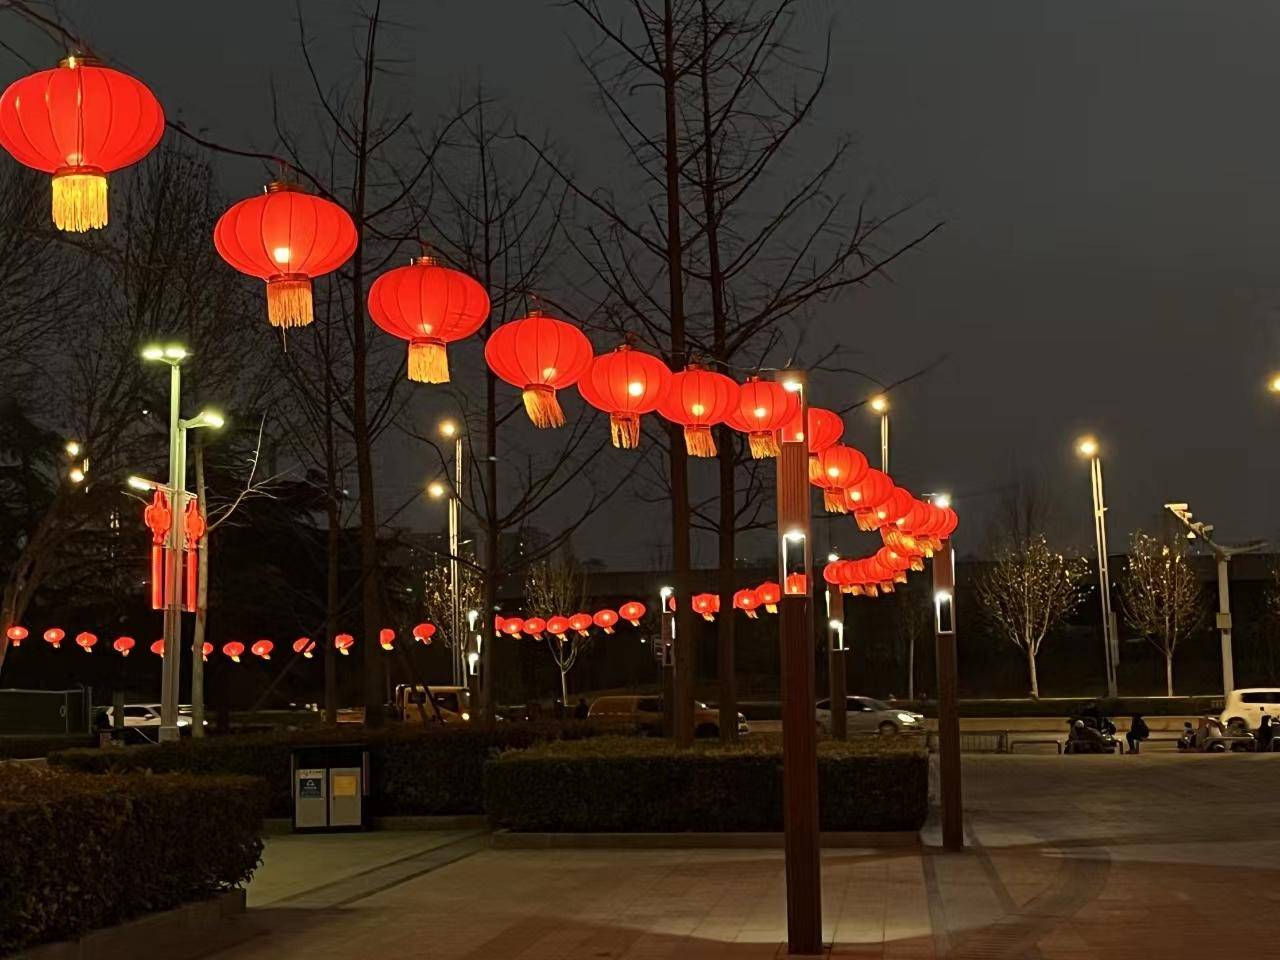 大红灯笼高高挂,郑州五一公园,雕塑公园的年味儿浓了